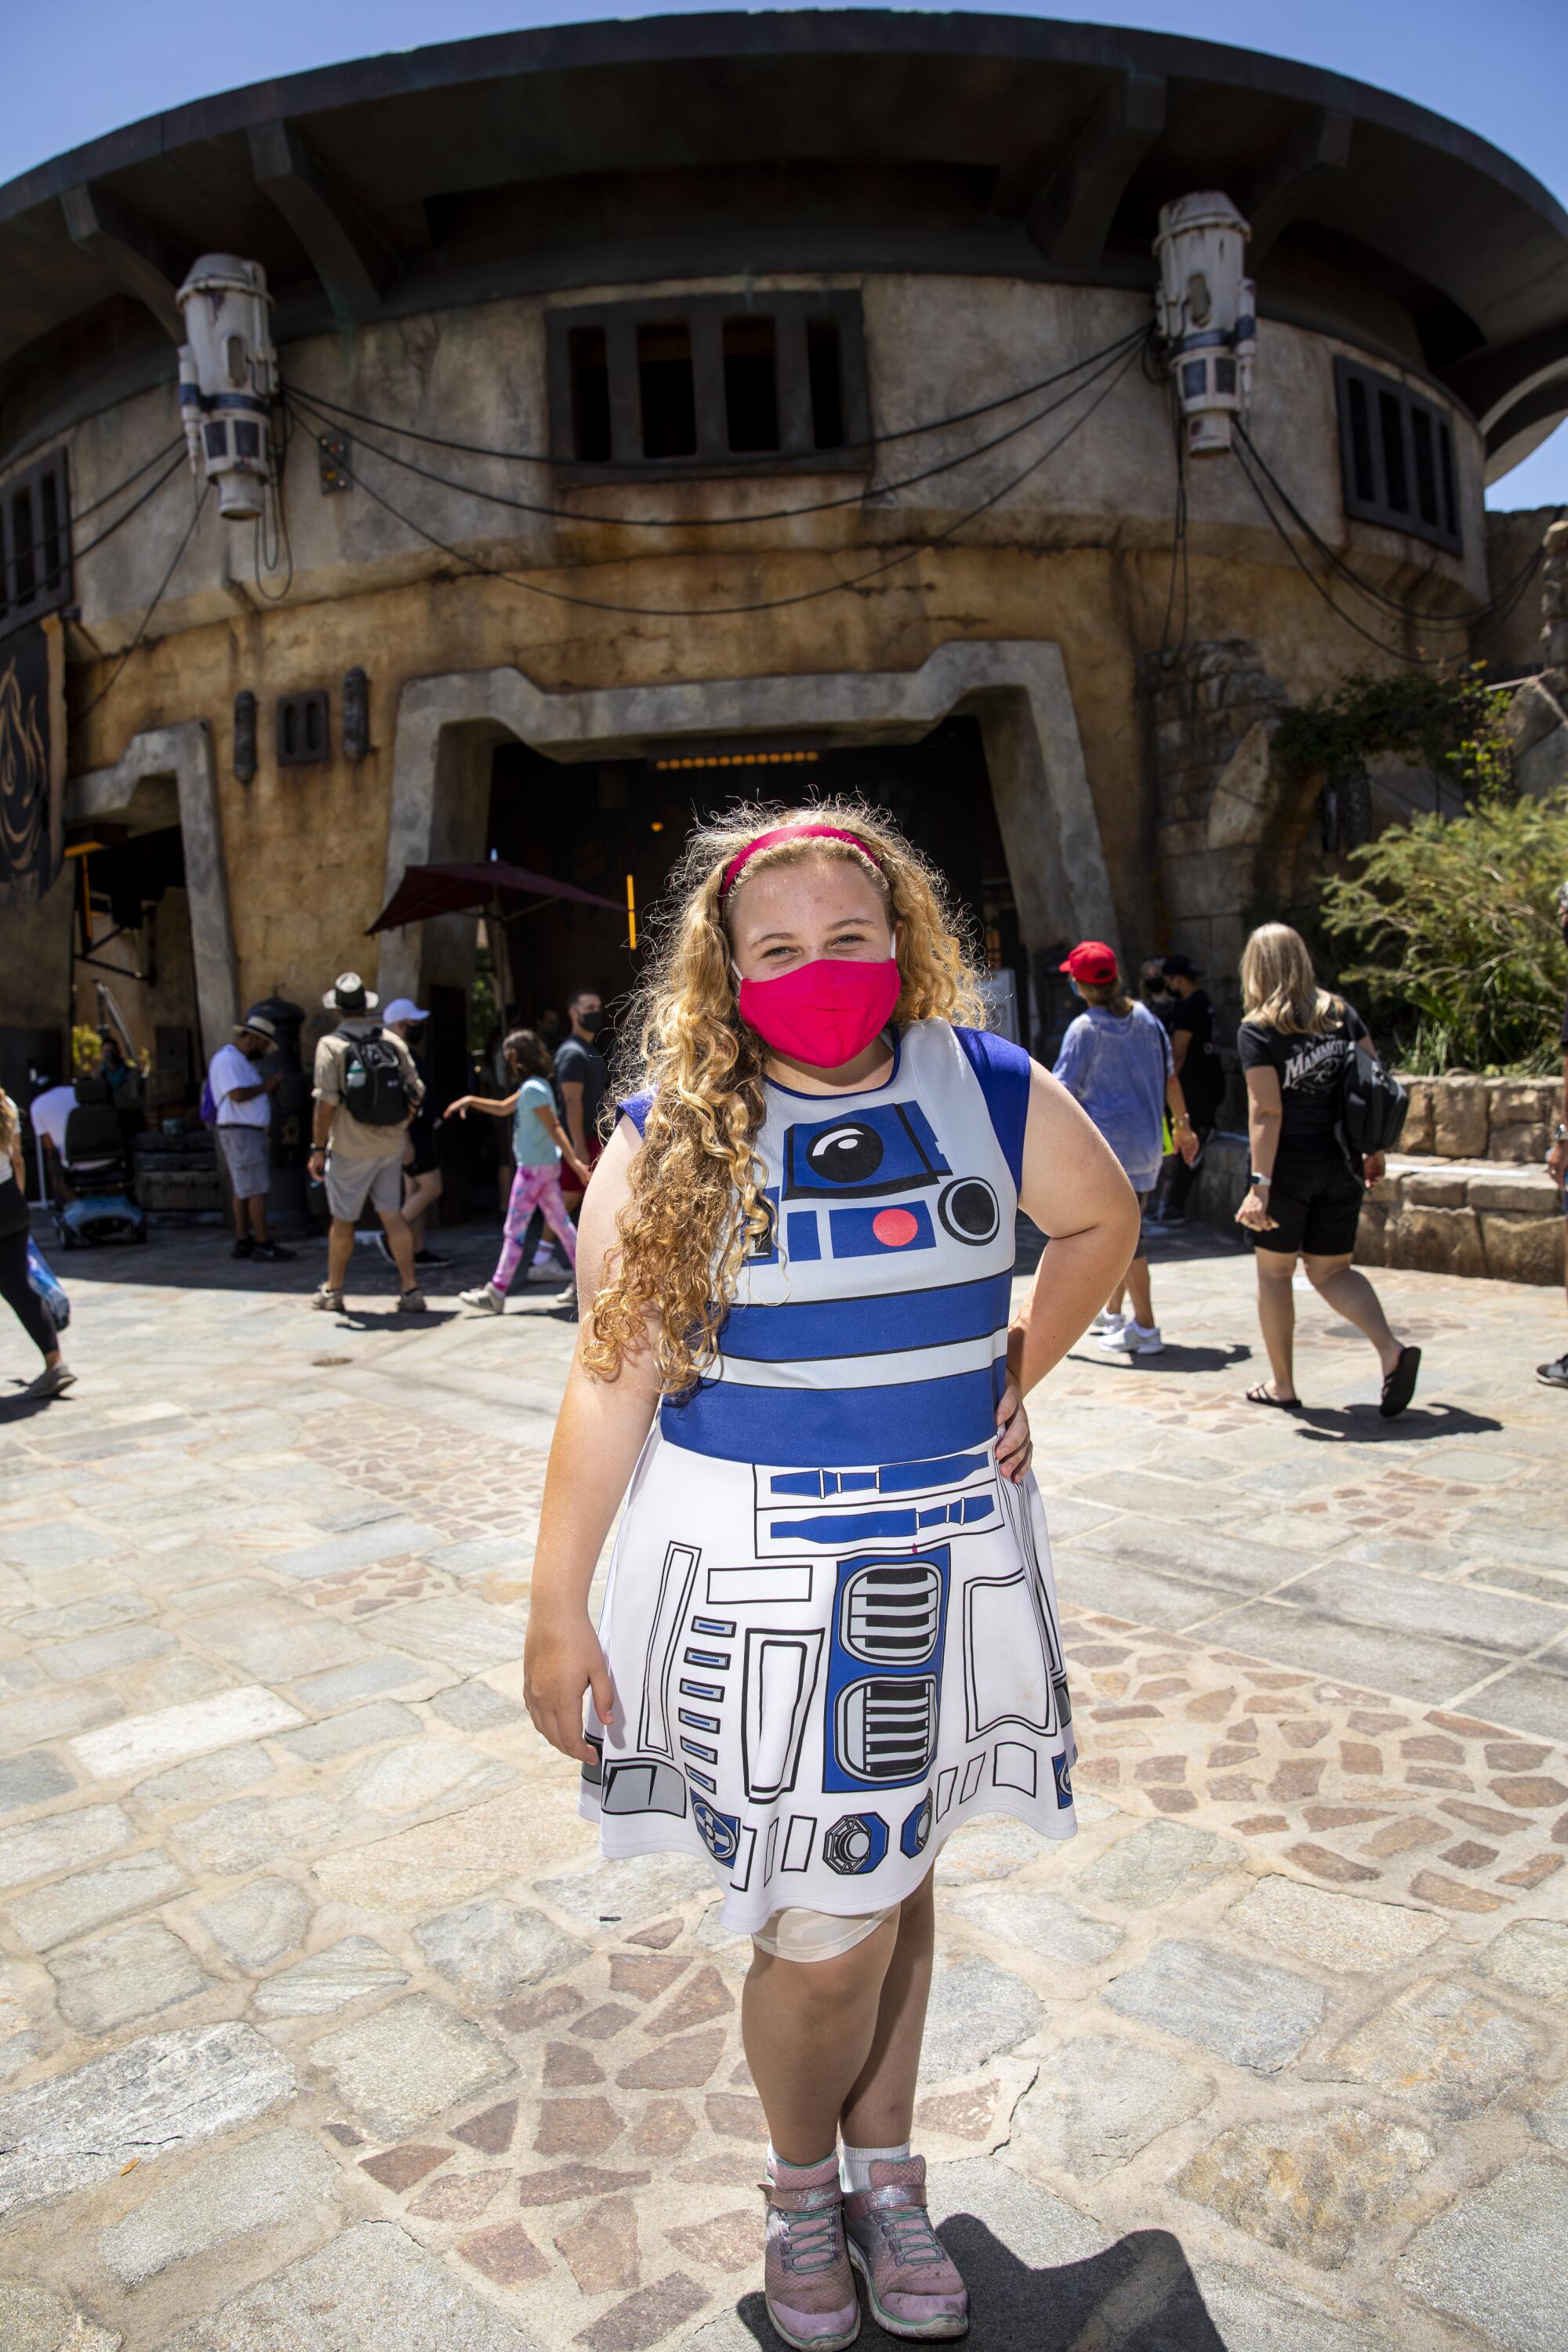 A woman wears a dress with an R2-D2 design.